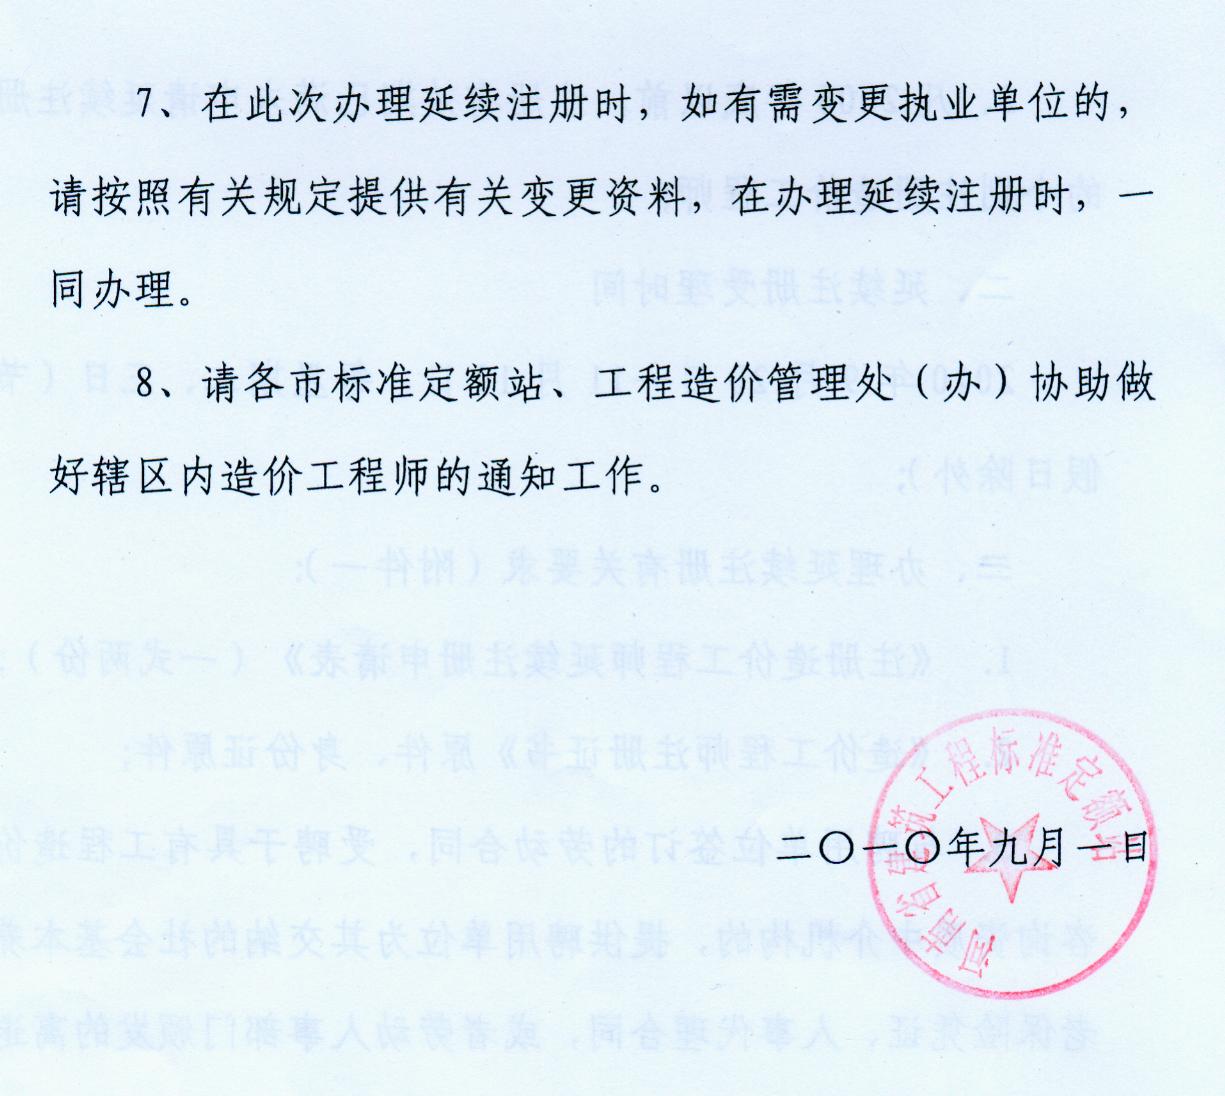 河南省关于办理2010年造价师延续注册的通知